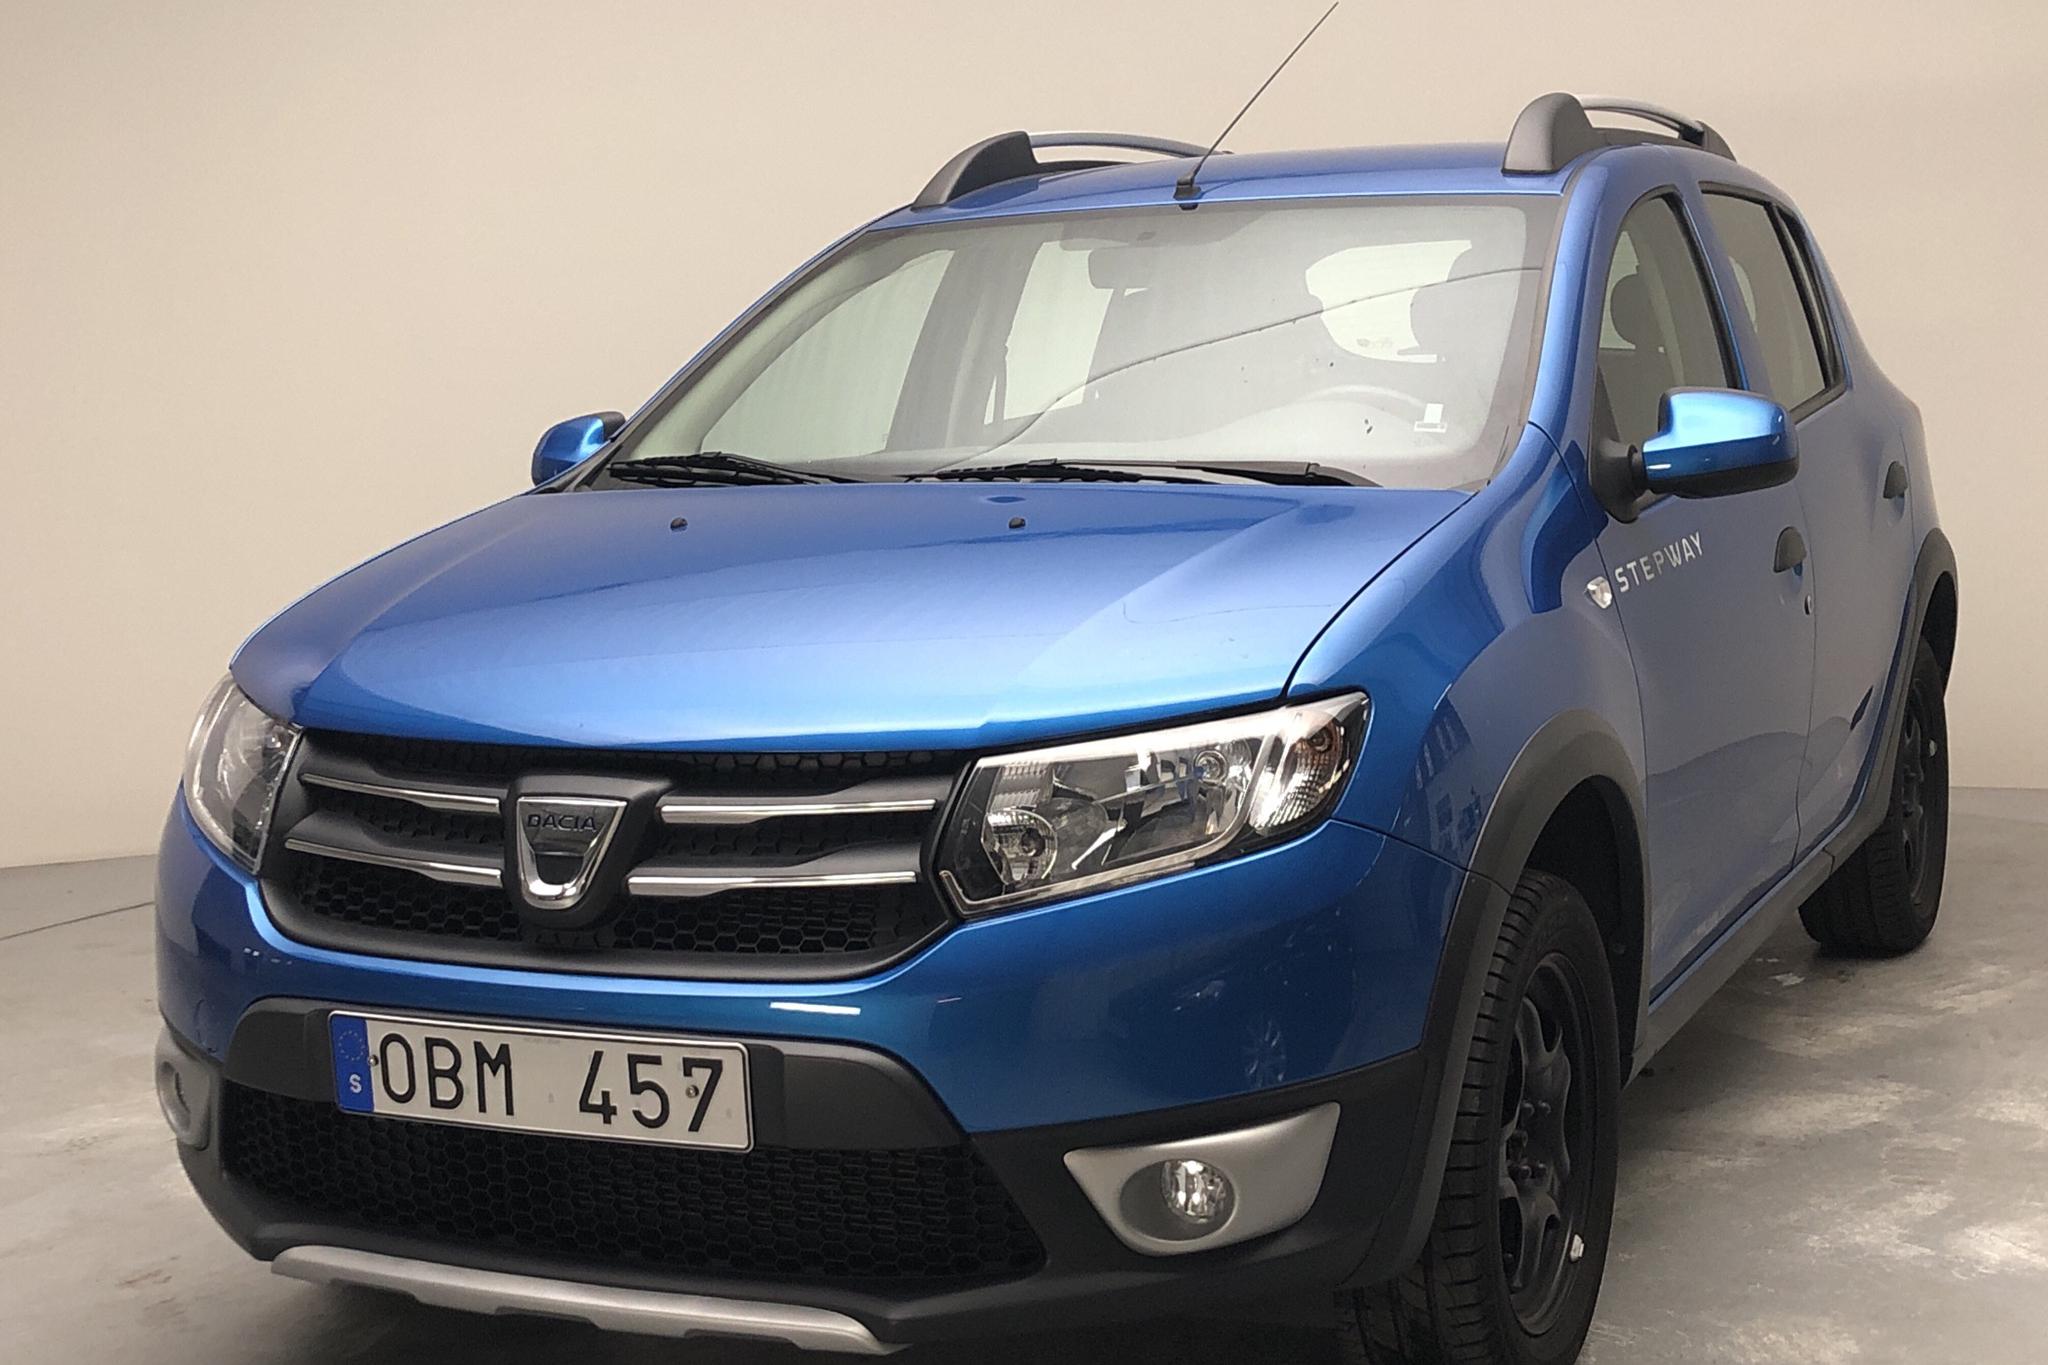 Dacia Sandero 0.9 TCe (90hk) - 45 480 km - Manual - Light Blue - 2014